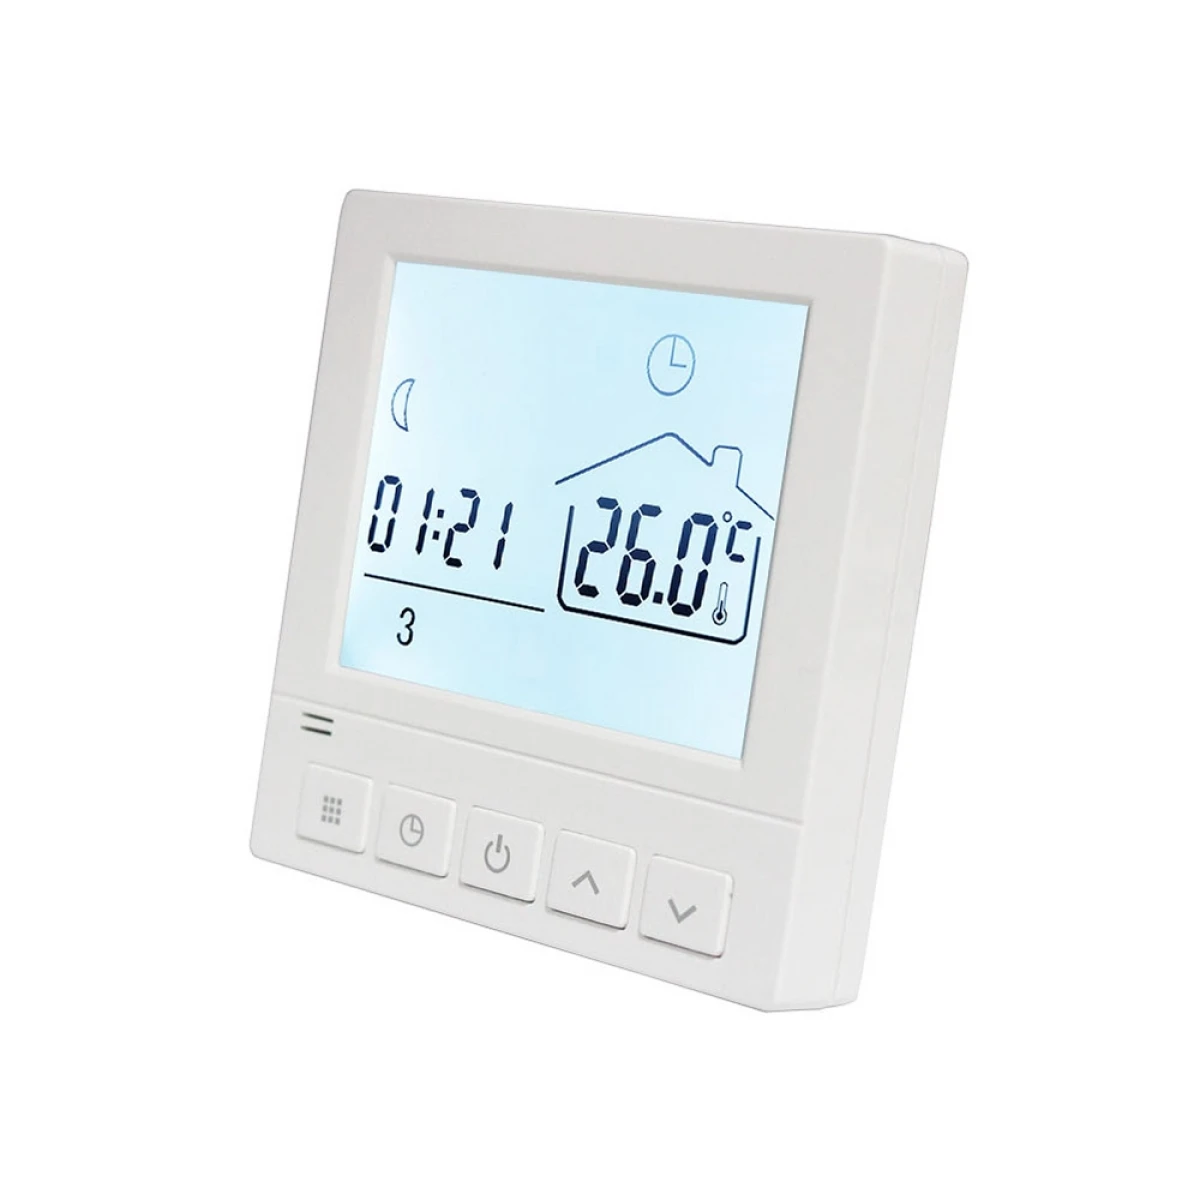 Programuojamas termostatas E400 elektra šildomoms grindims